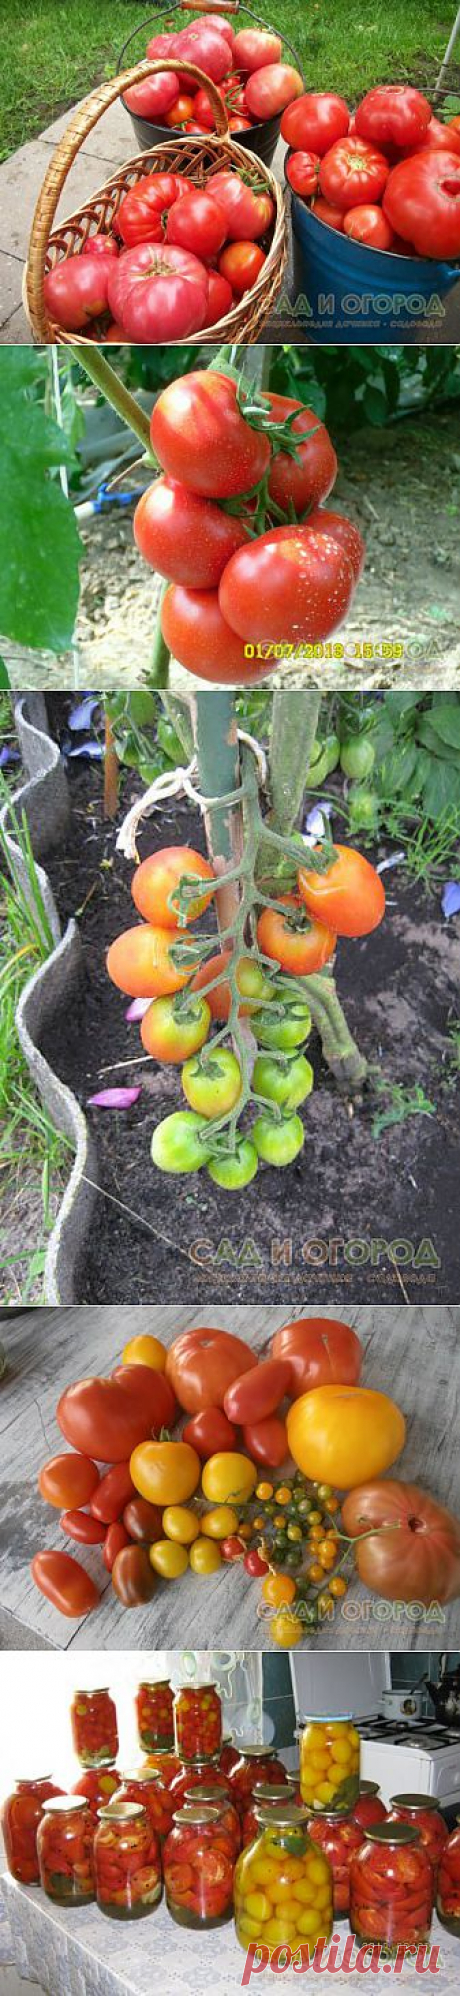 Выращиваем различные сорта томатов в октрытом грунте